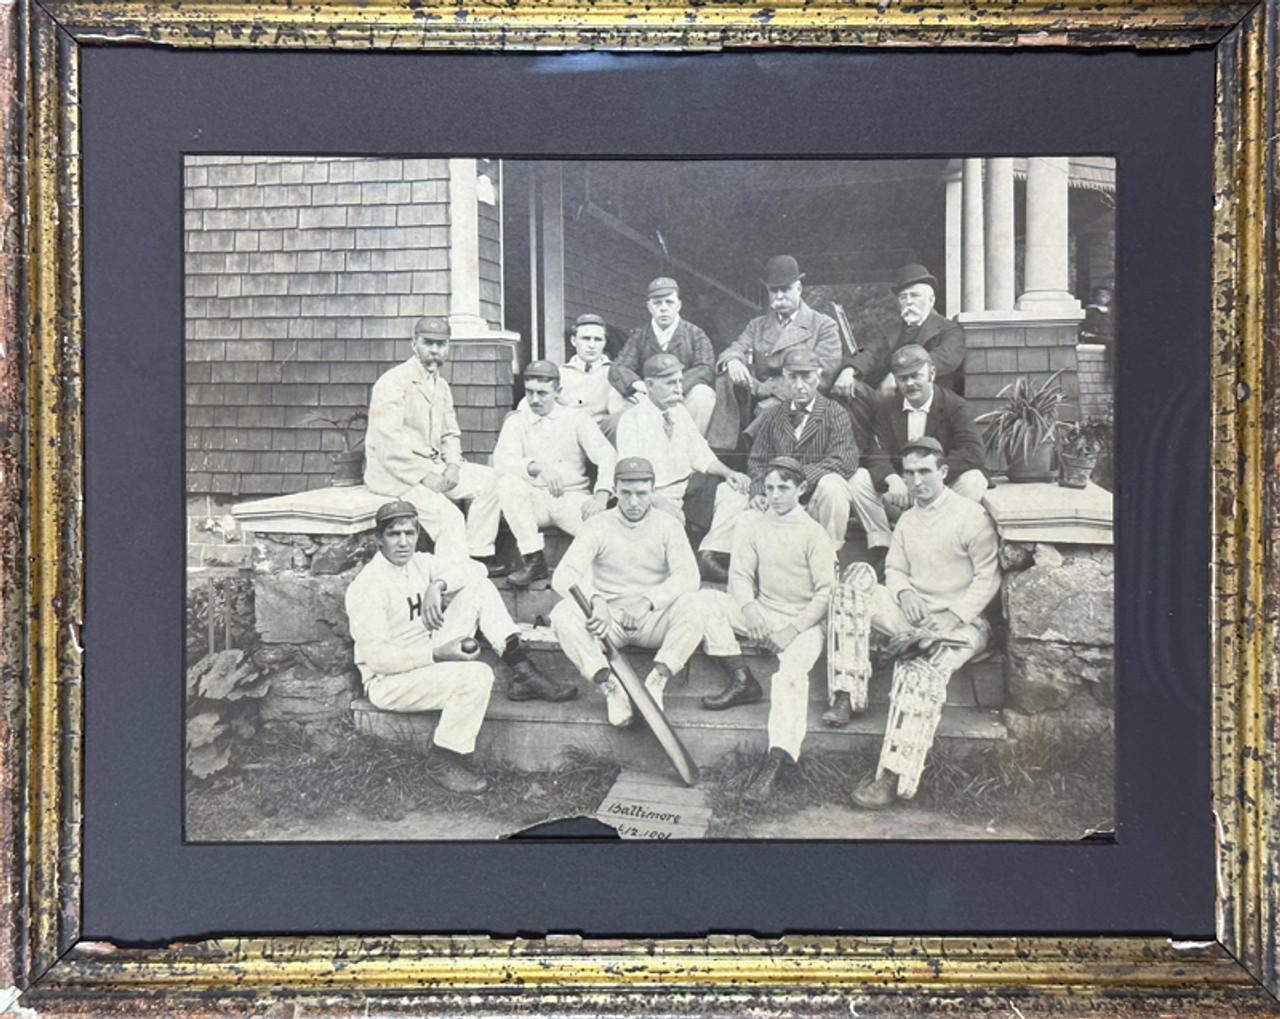 Cricket team 1901 original antique photograph USA in refitted original frame